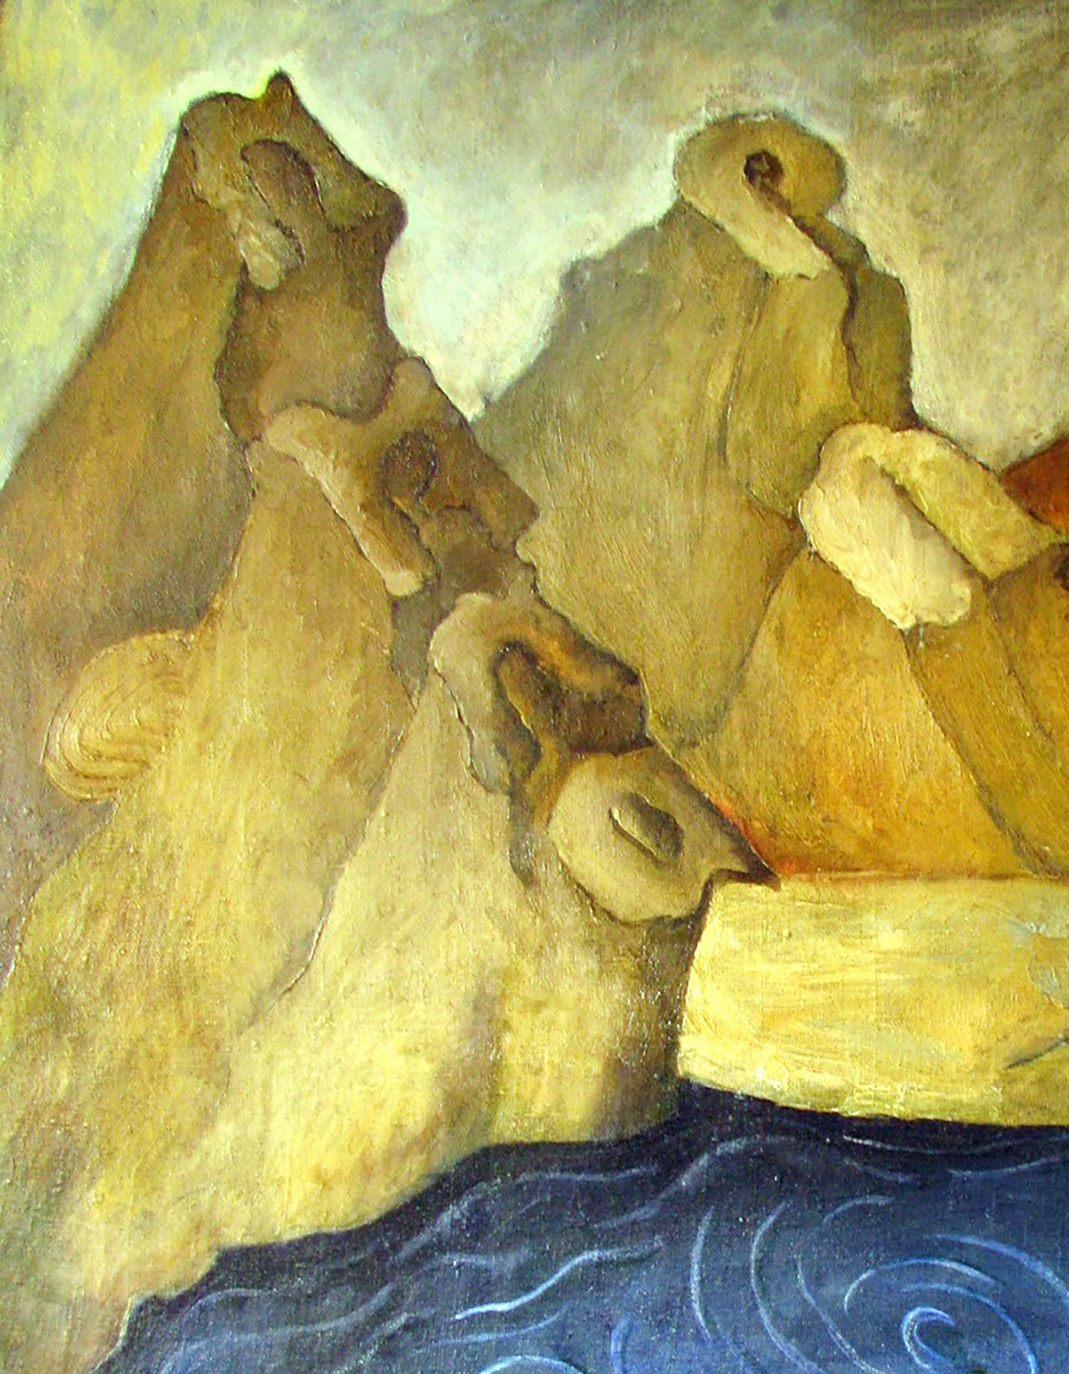 Künstler: Warwarow Anatoli Viktorowitsch
Titel: Und das Schiff segelt,
Größe: 40,5x31,5 Zoll, (105x80 cm)
Medium: Öl auf Leinwand
Handbemalt, original, einzigartig.

Wir stellen Ihnen das Ölgemälde 